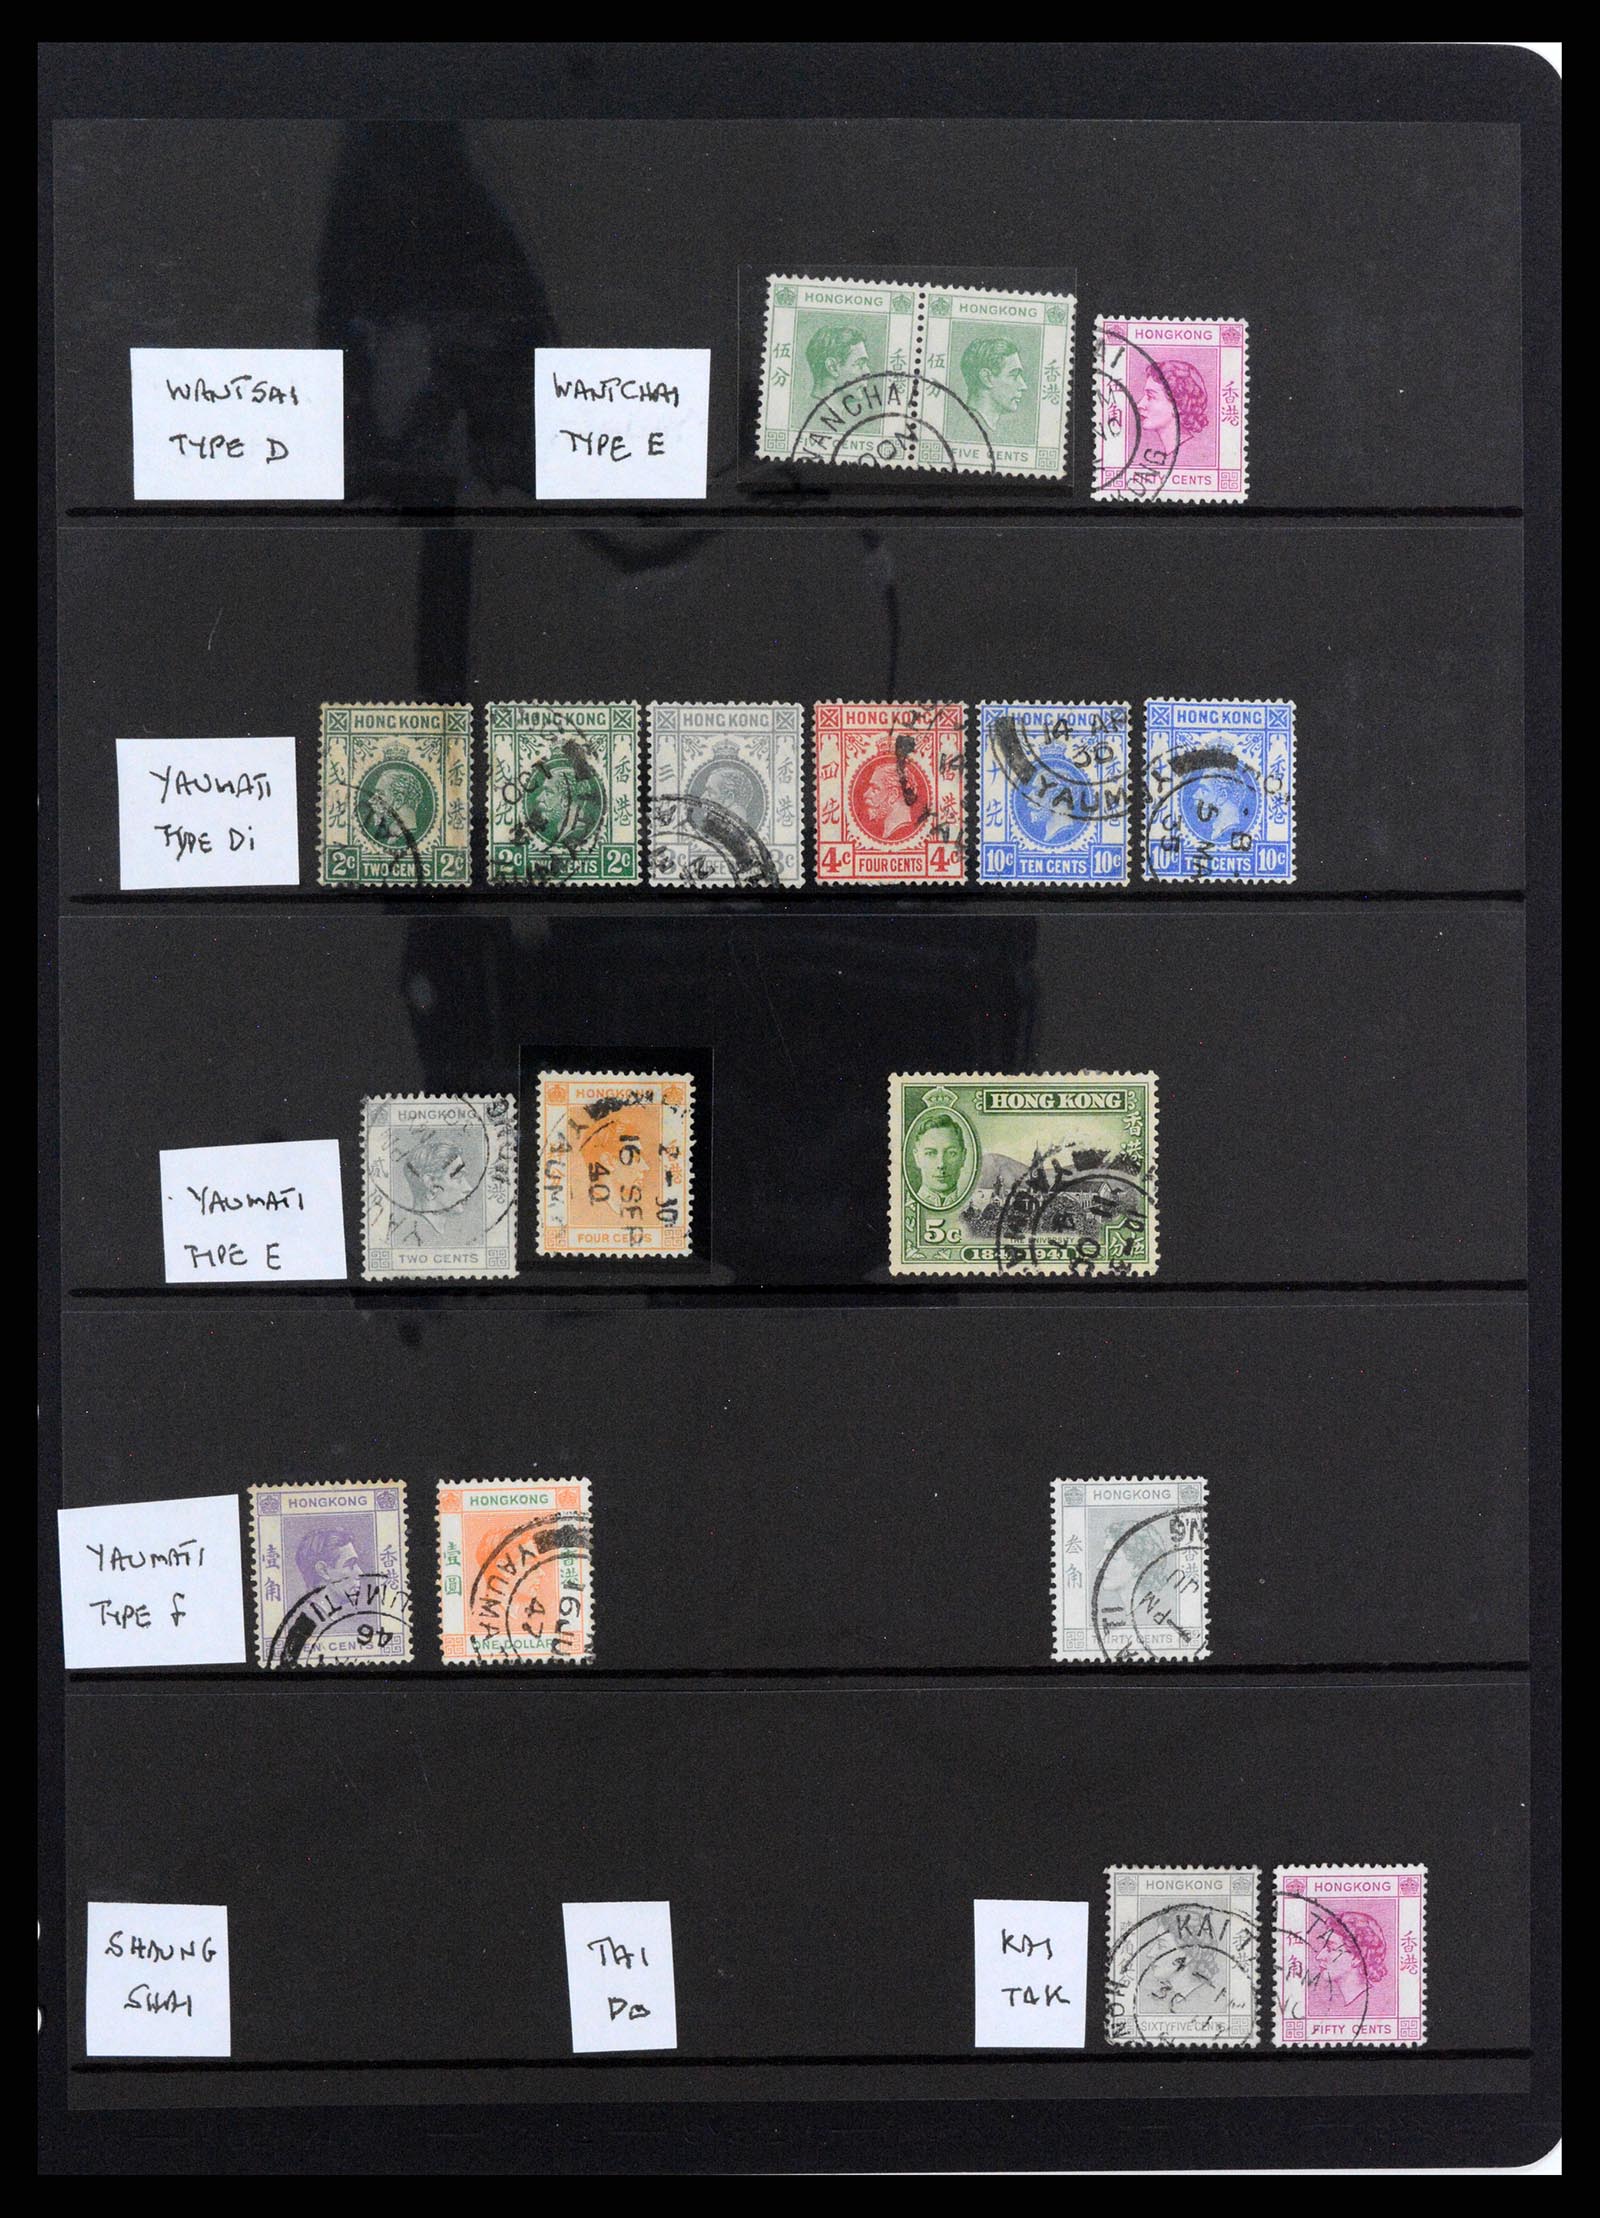 37358 062 - Stamp collection 37358 Hong Kong 1861-1997.